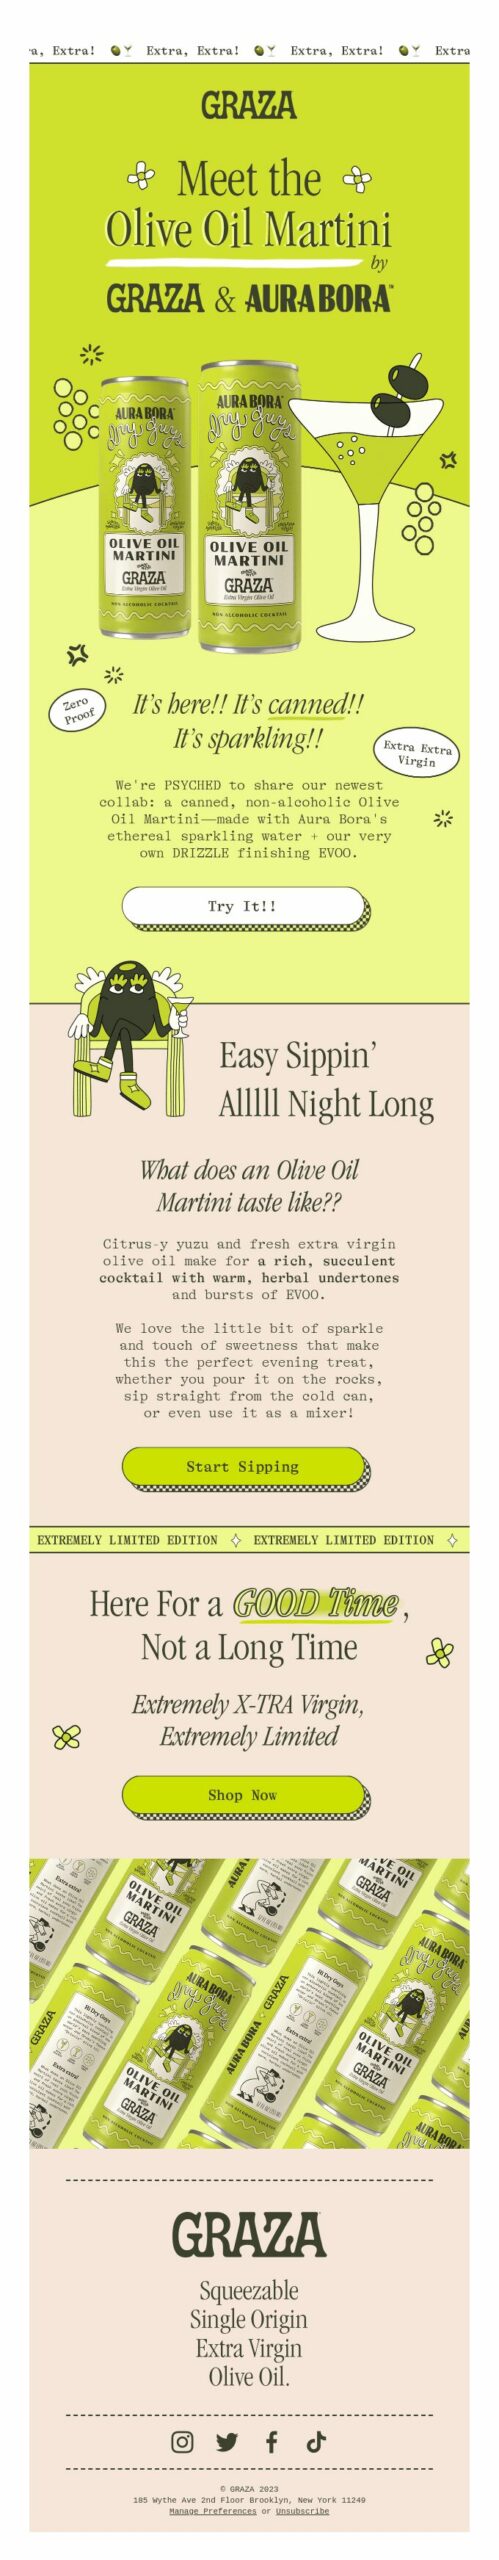 Graza, Martini Day email campaign. 